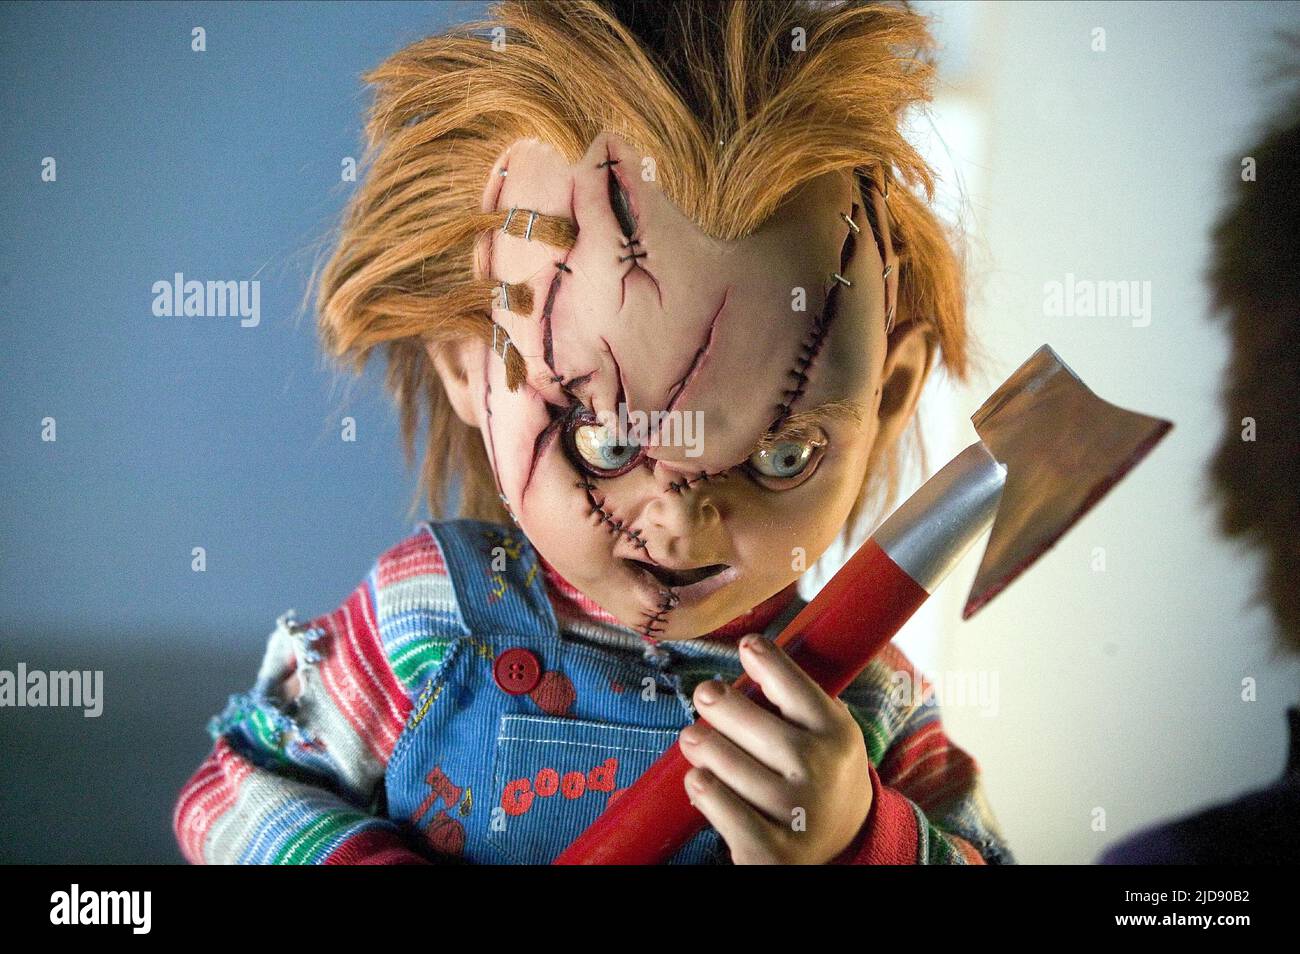 TBT #151, O Filho de Chucky (2004, Don Mancini)